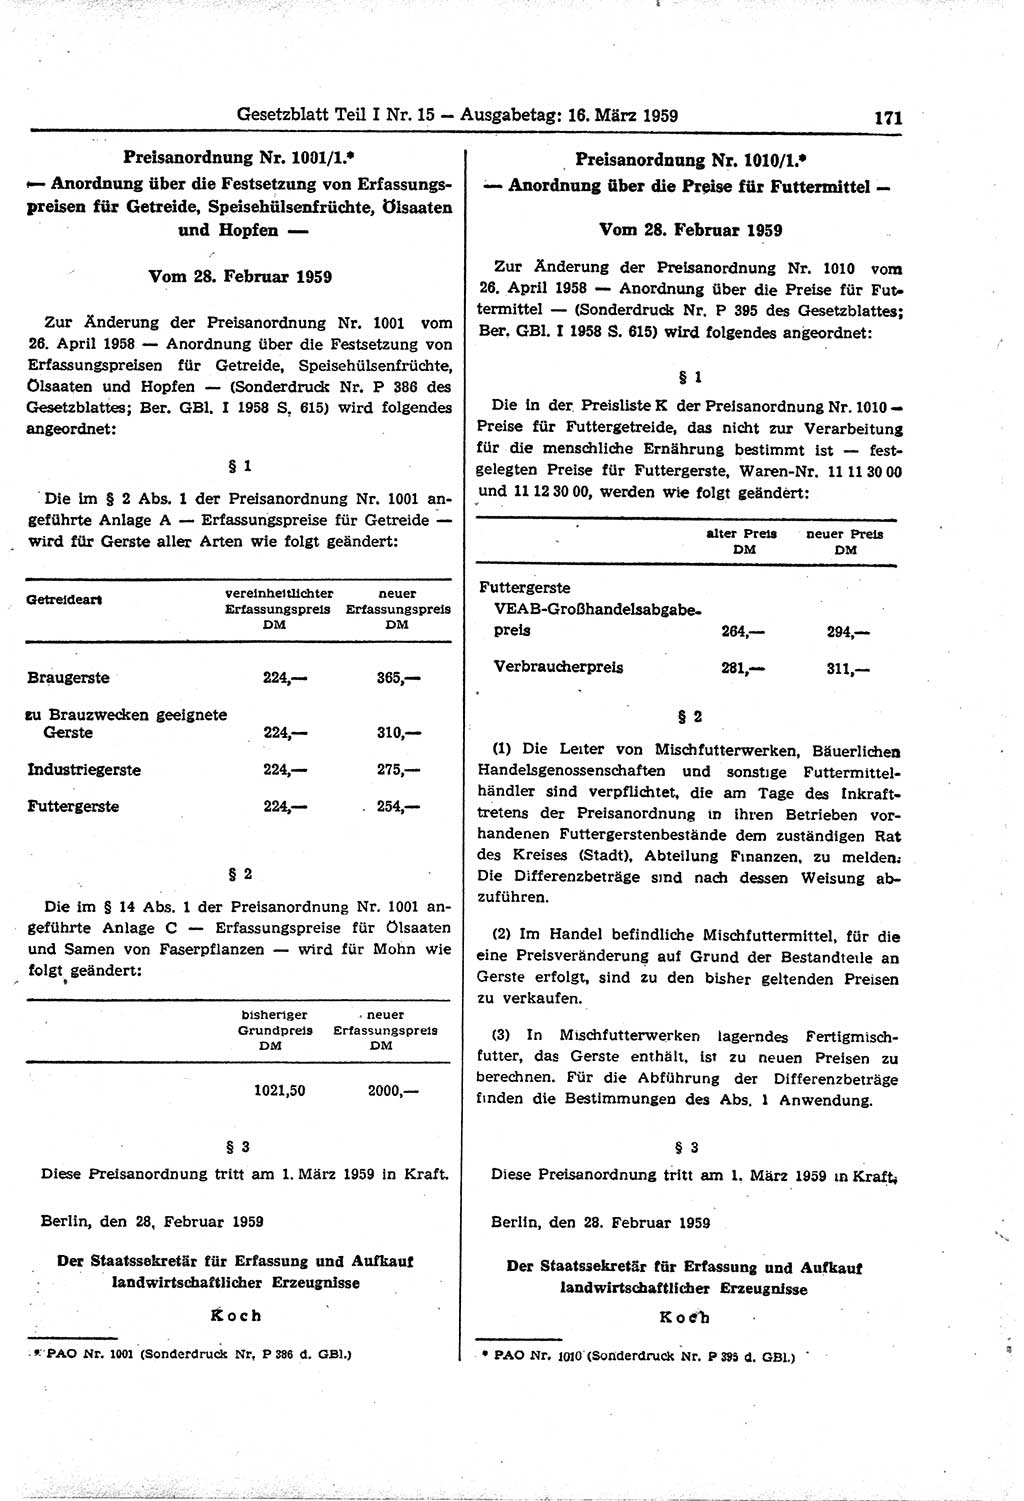 Gesetzblatt (GBl.) der Deutschen Demokratischen Republik (DDR) Teil Ⅰ 1959, Seite 171 (GBl. DDR Ⅰ 1959, S. 171)